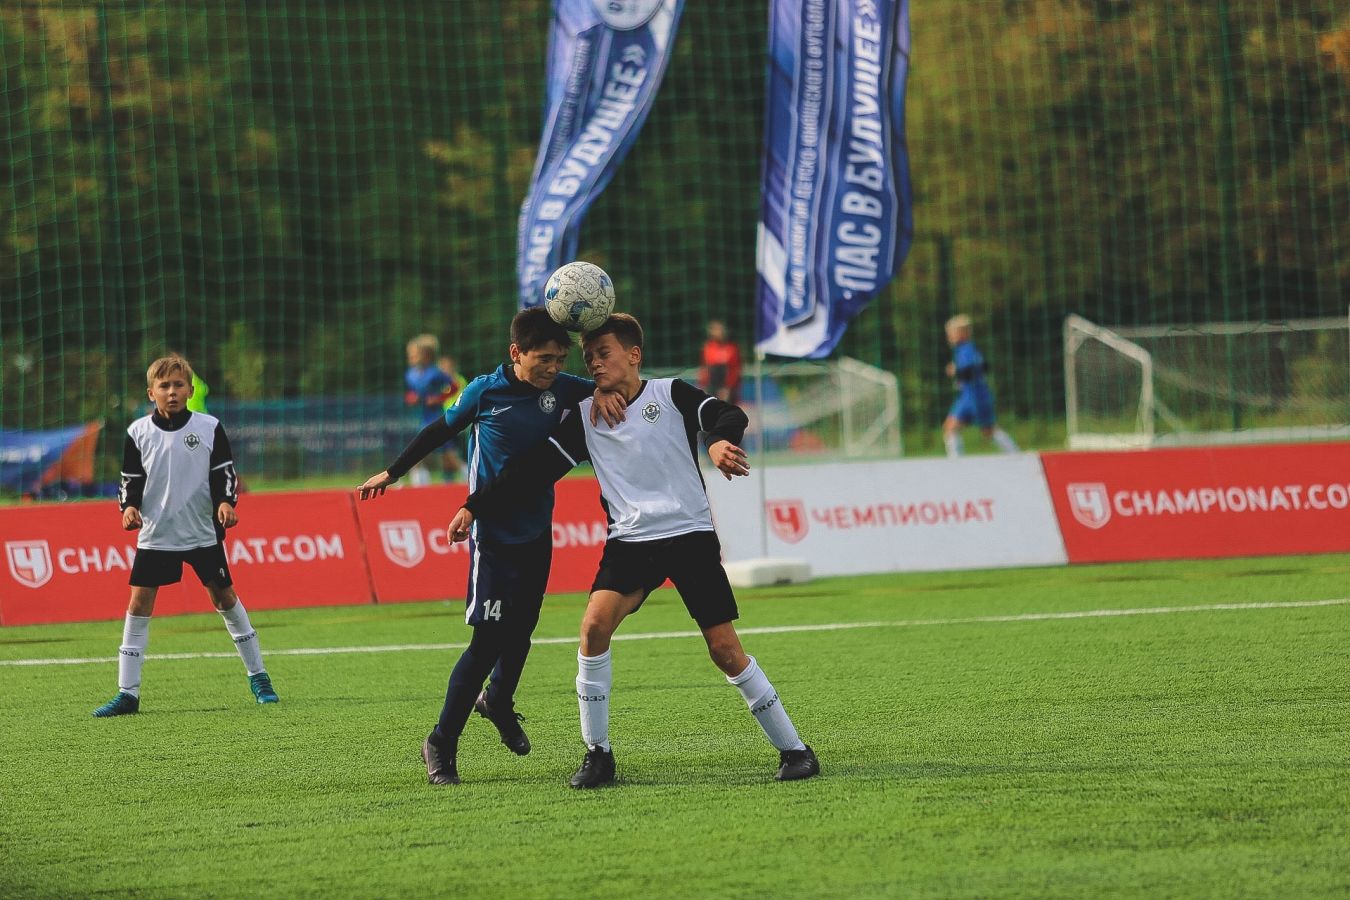 Отборочный турнир детского фестиваля «Чемпионата» пройдёт в Евпатории в начале мая